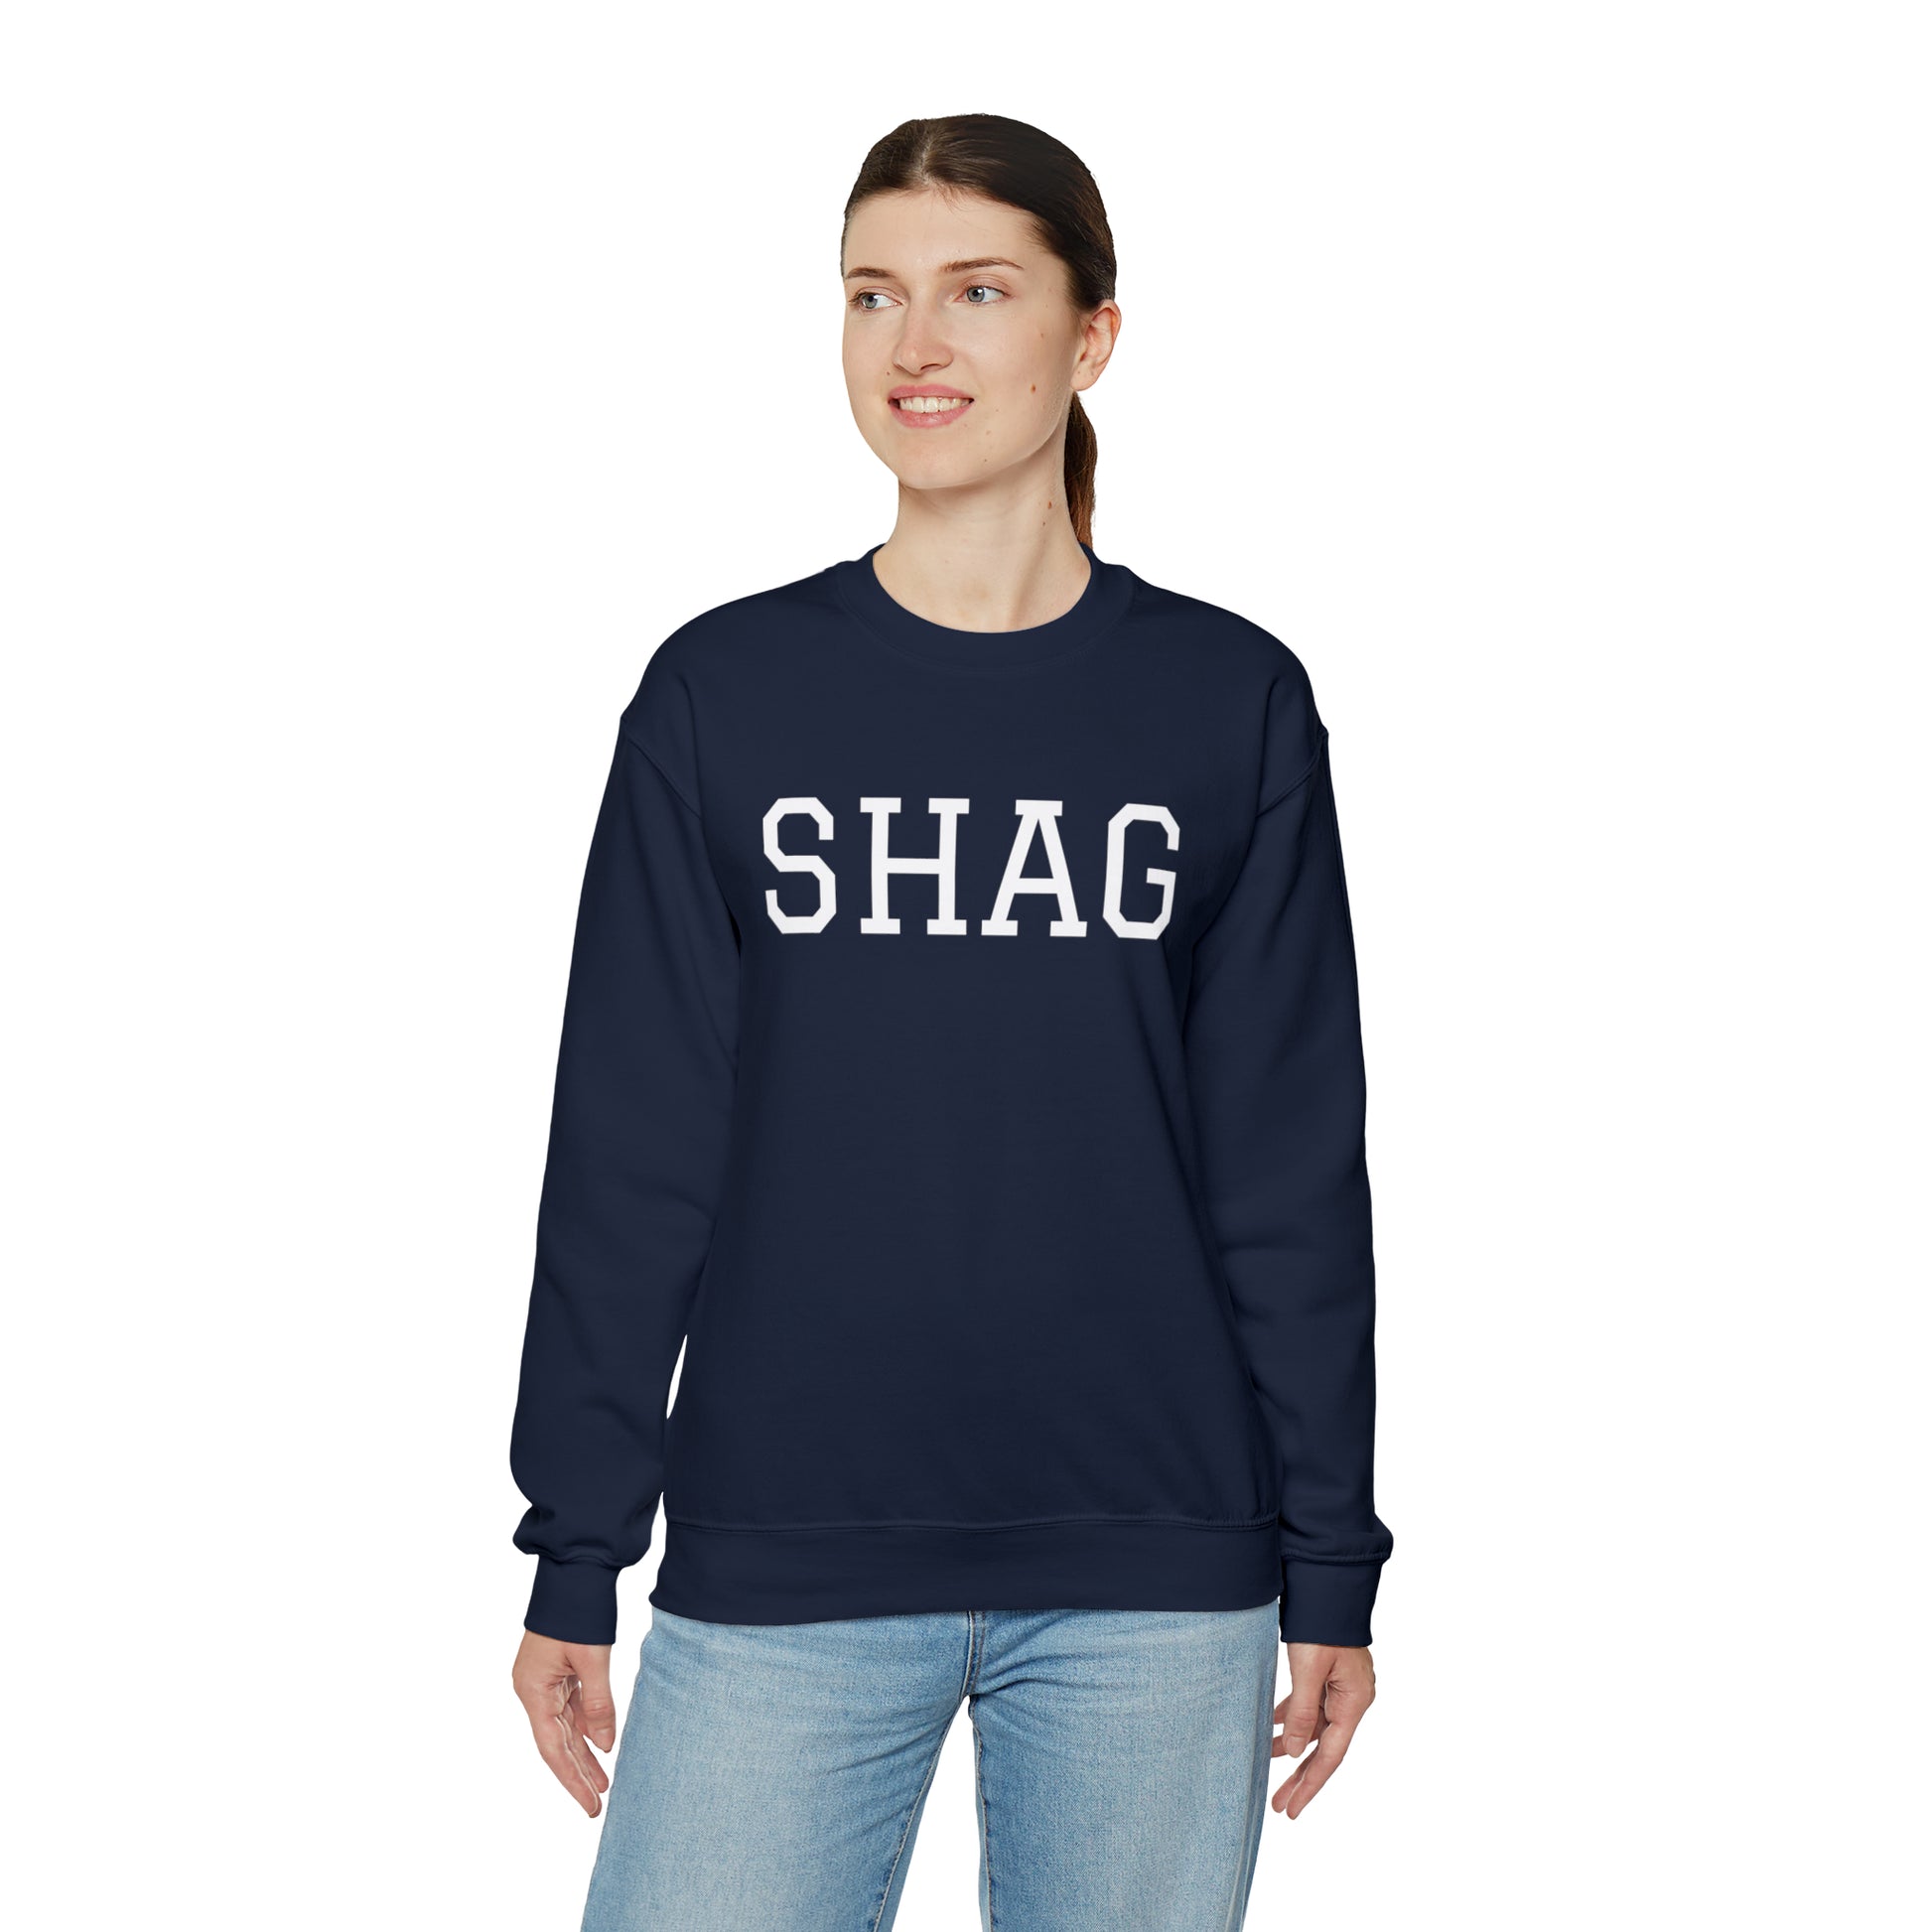 SHAG Crewneck Sweatshirt